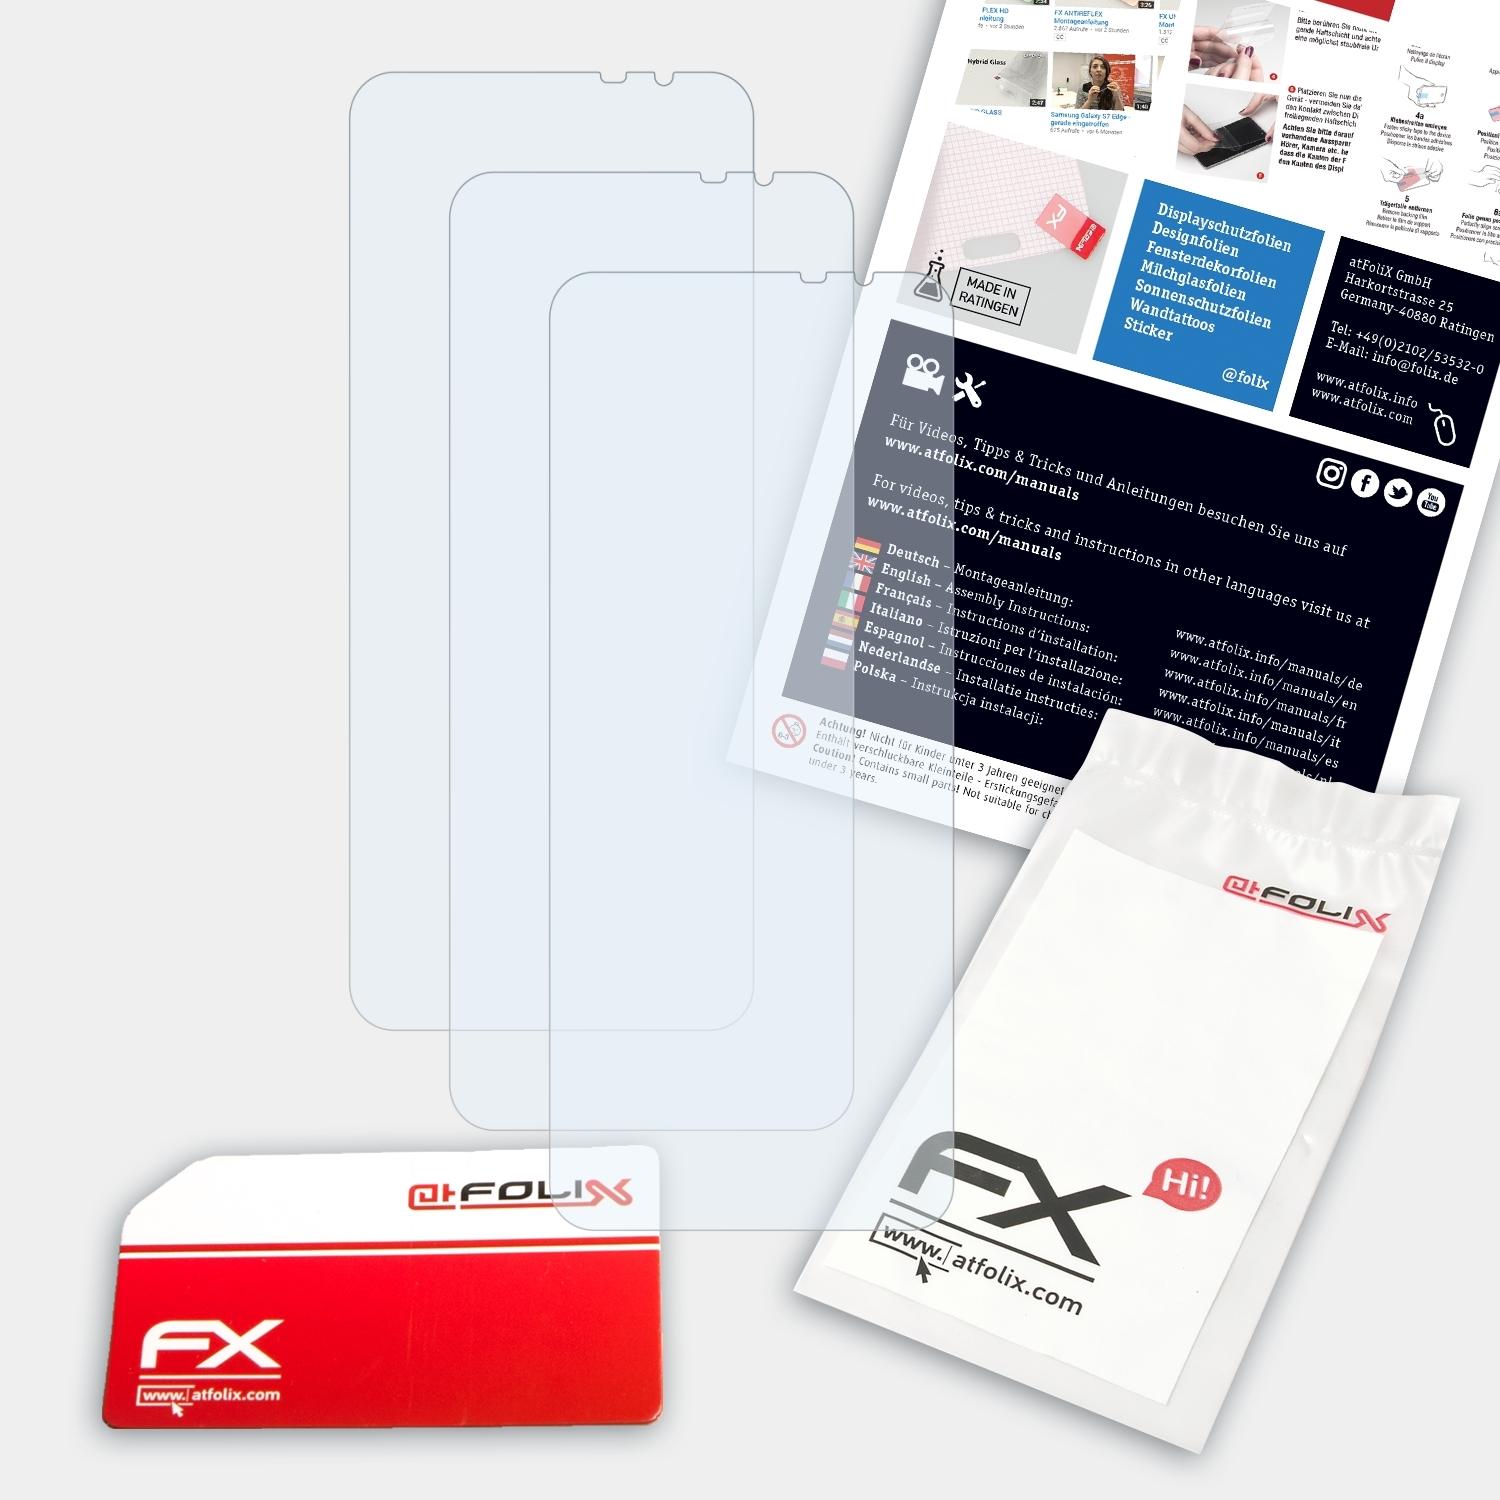 ATFOLIX Insider) 3x Snapdragon Asus FX-Clear Displayschutz(für